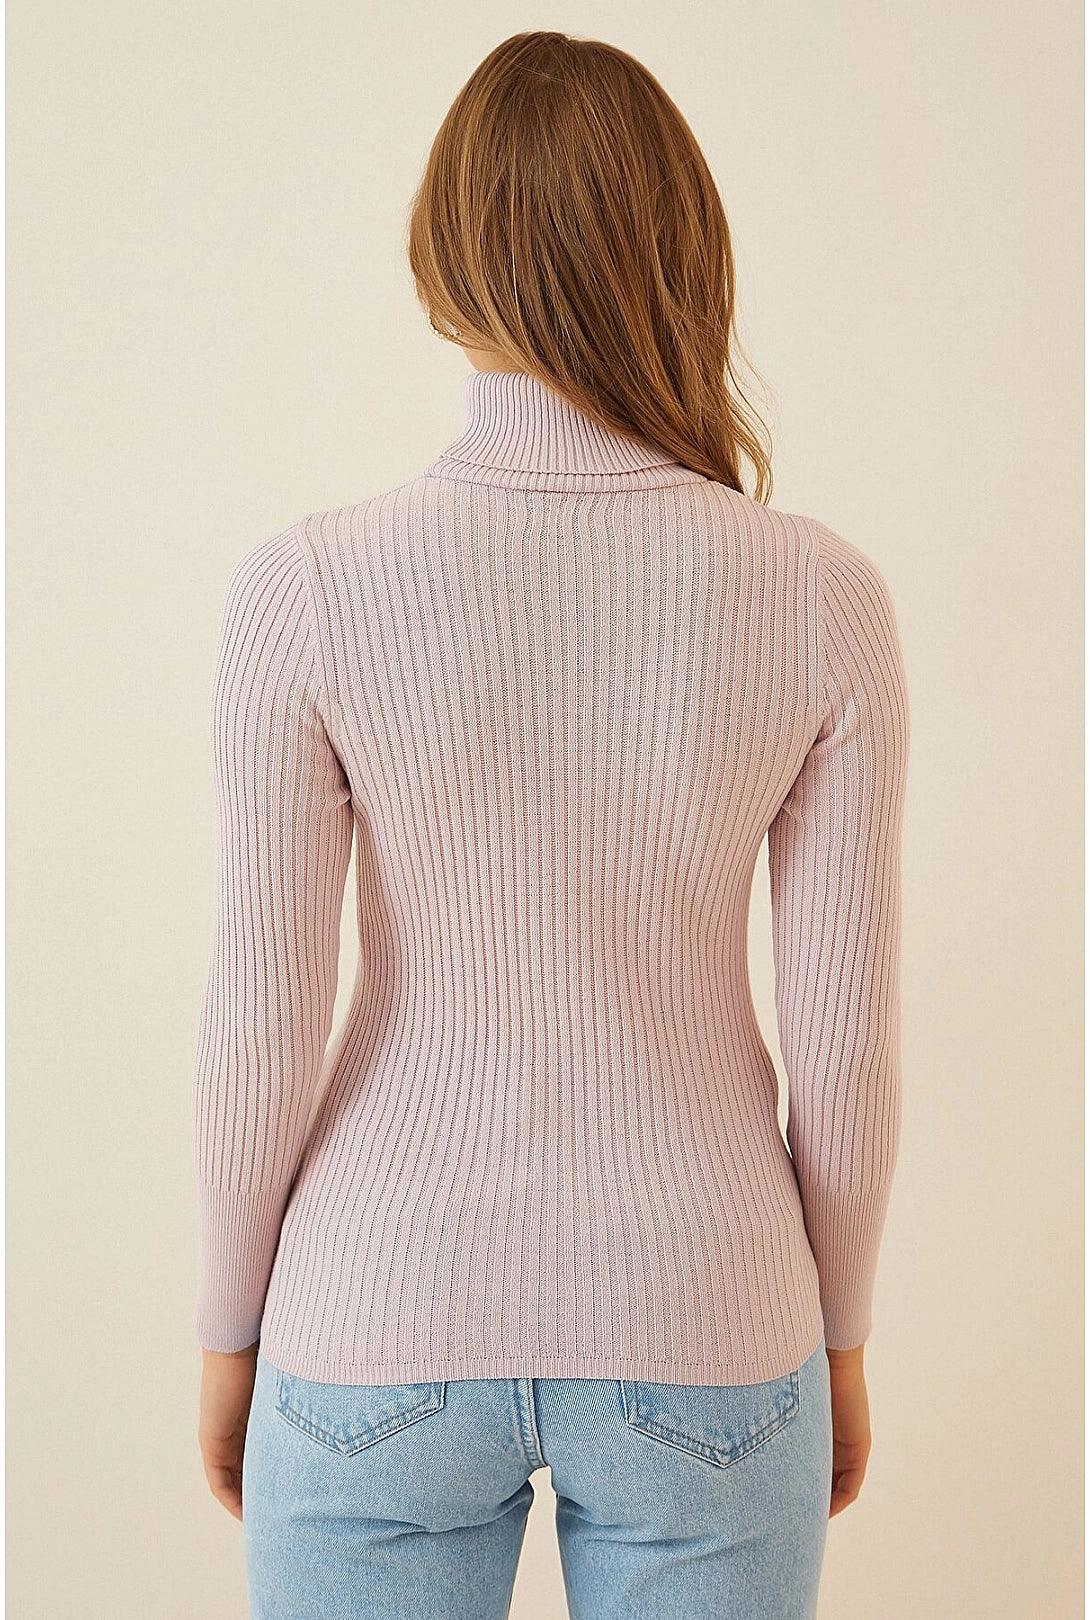 Elegant Turtleneck Knitwear Sweater Top - Powder Pink